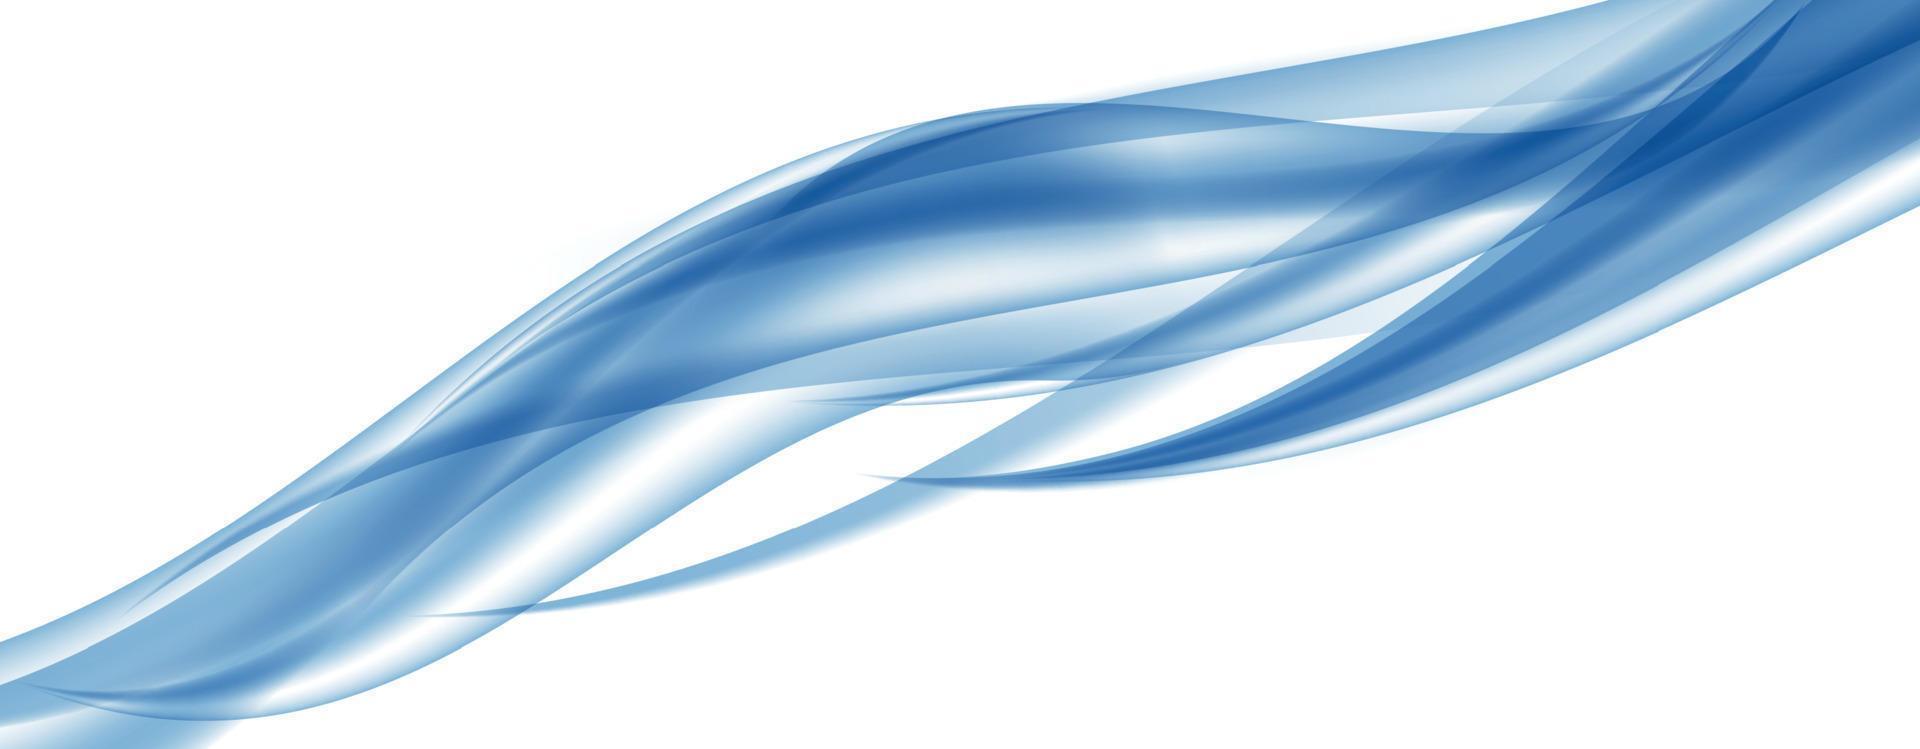 abstracte blauwe golf ingesteld op transparante achtergrond. vector illustratie